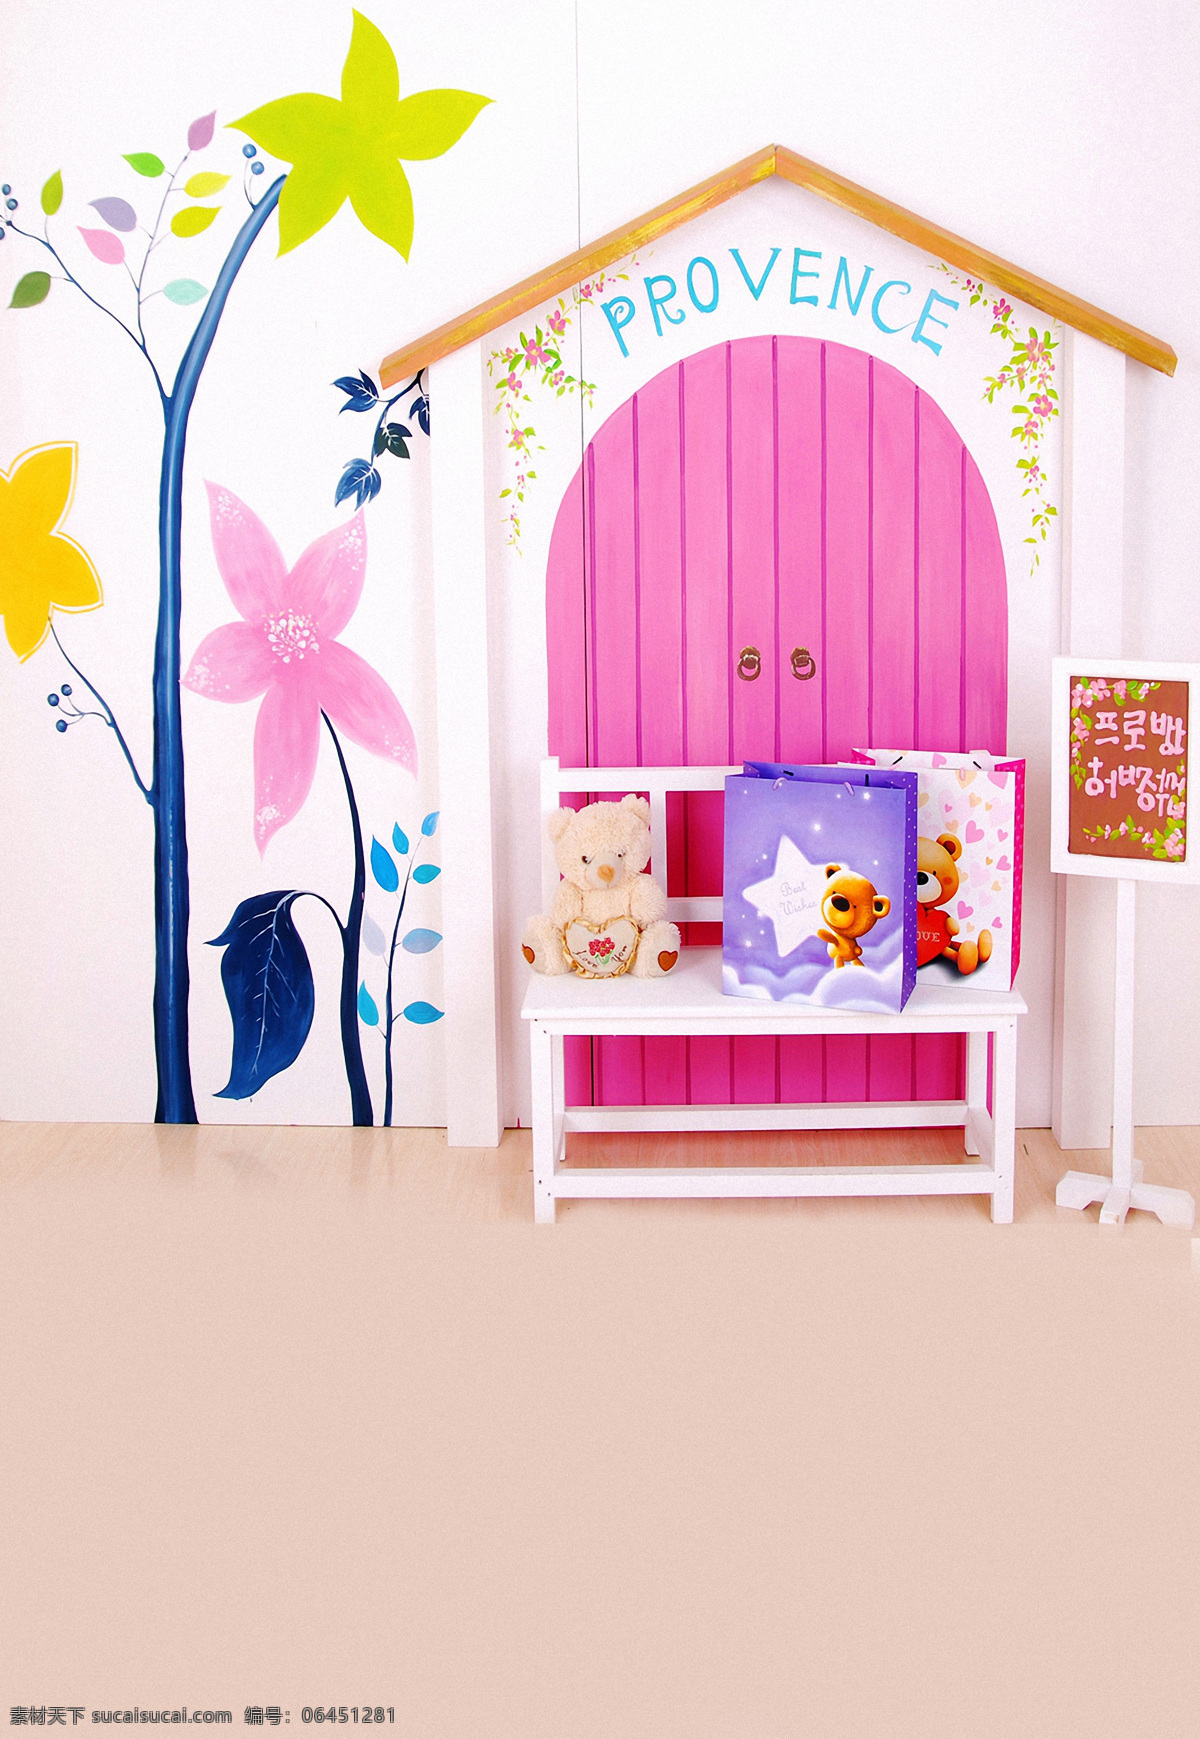 儿童 小 熊 影楼 背景 大图 卡通椅子 小树 小熊 粉色的门 卡通 小屋 清晰 背景图片